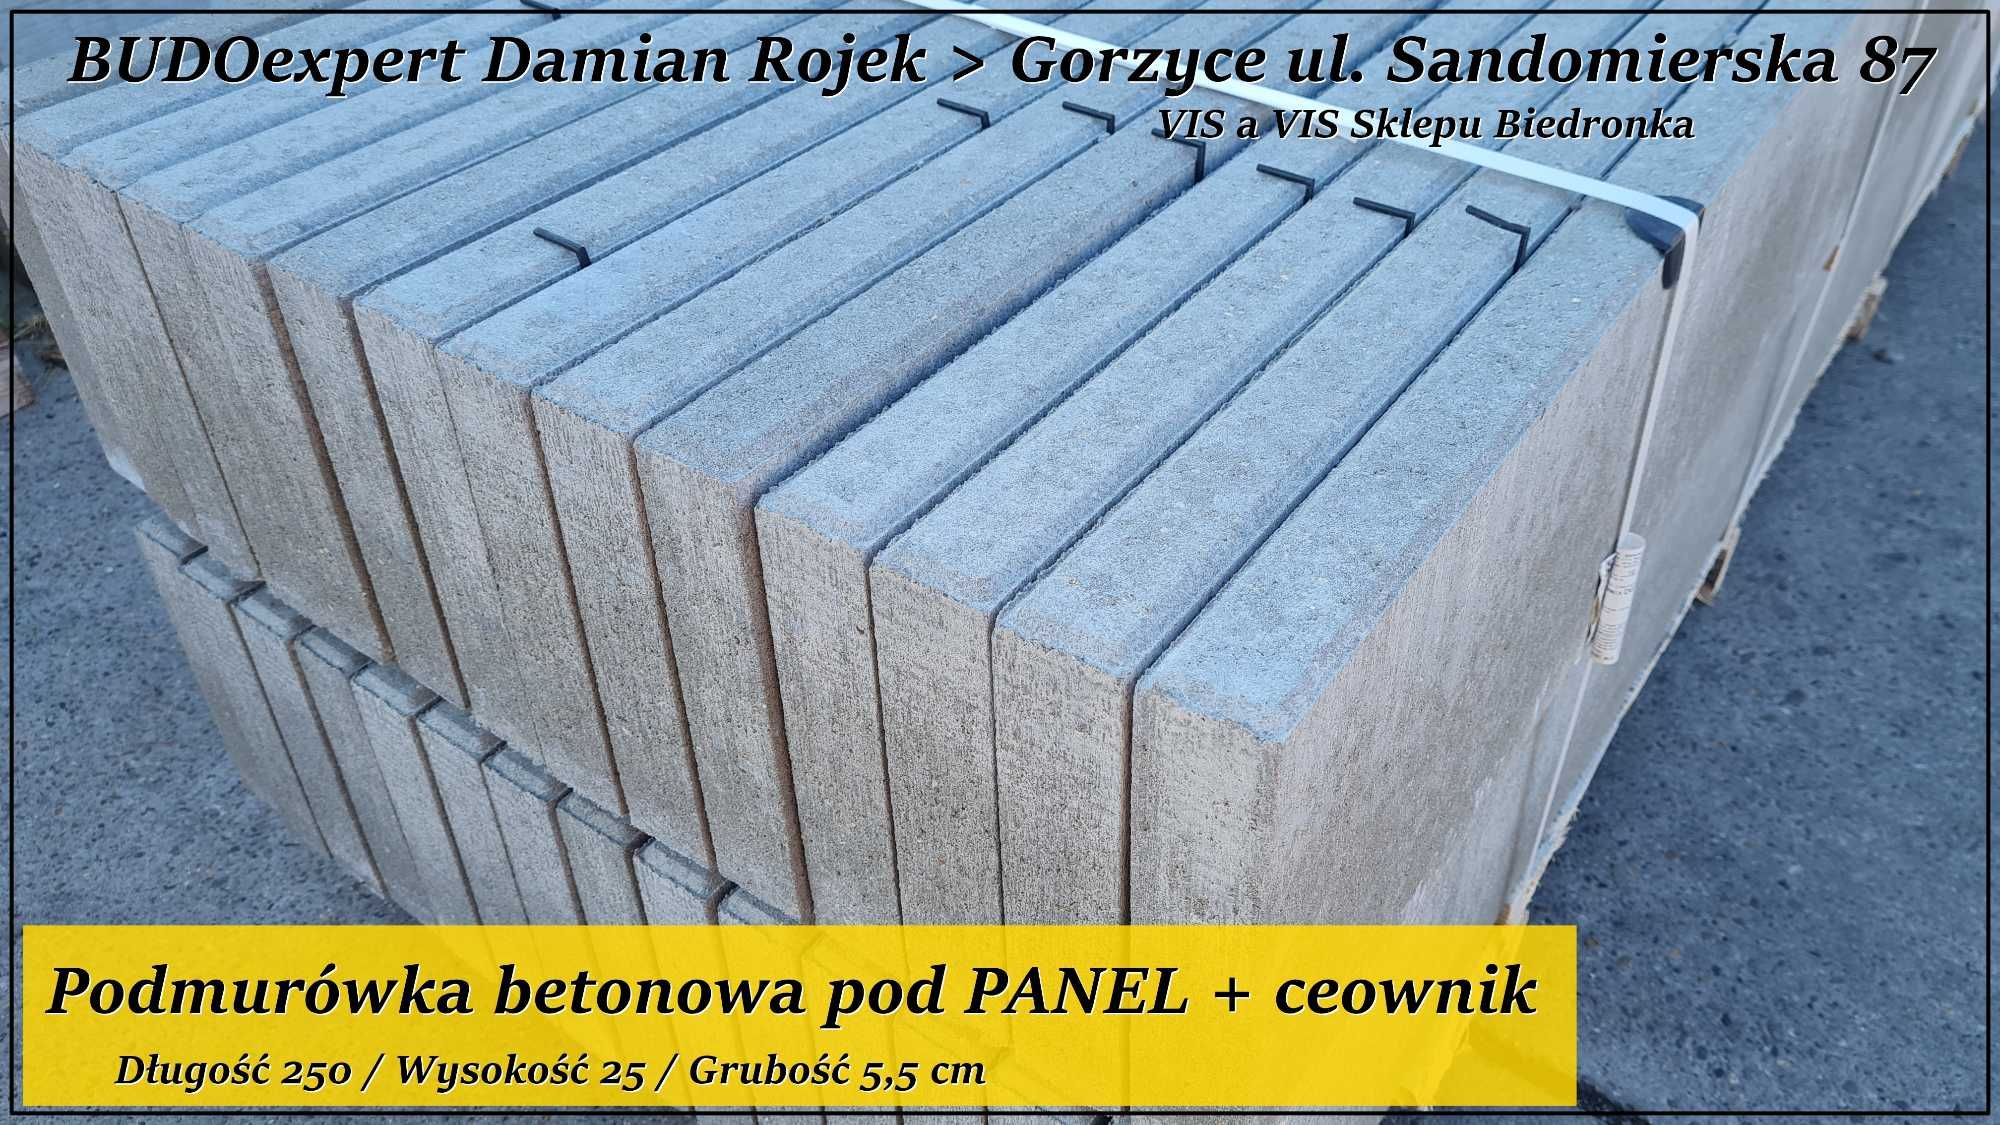 Betonowa podmurówka pod panel 250x25x5 gładka szara deska betonowa